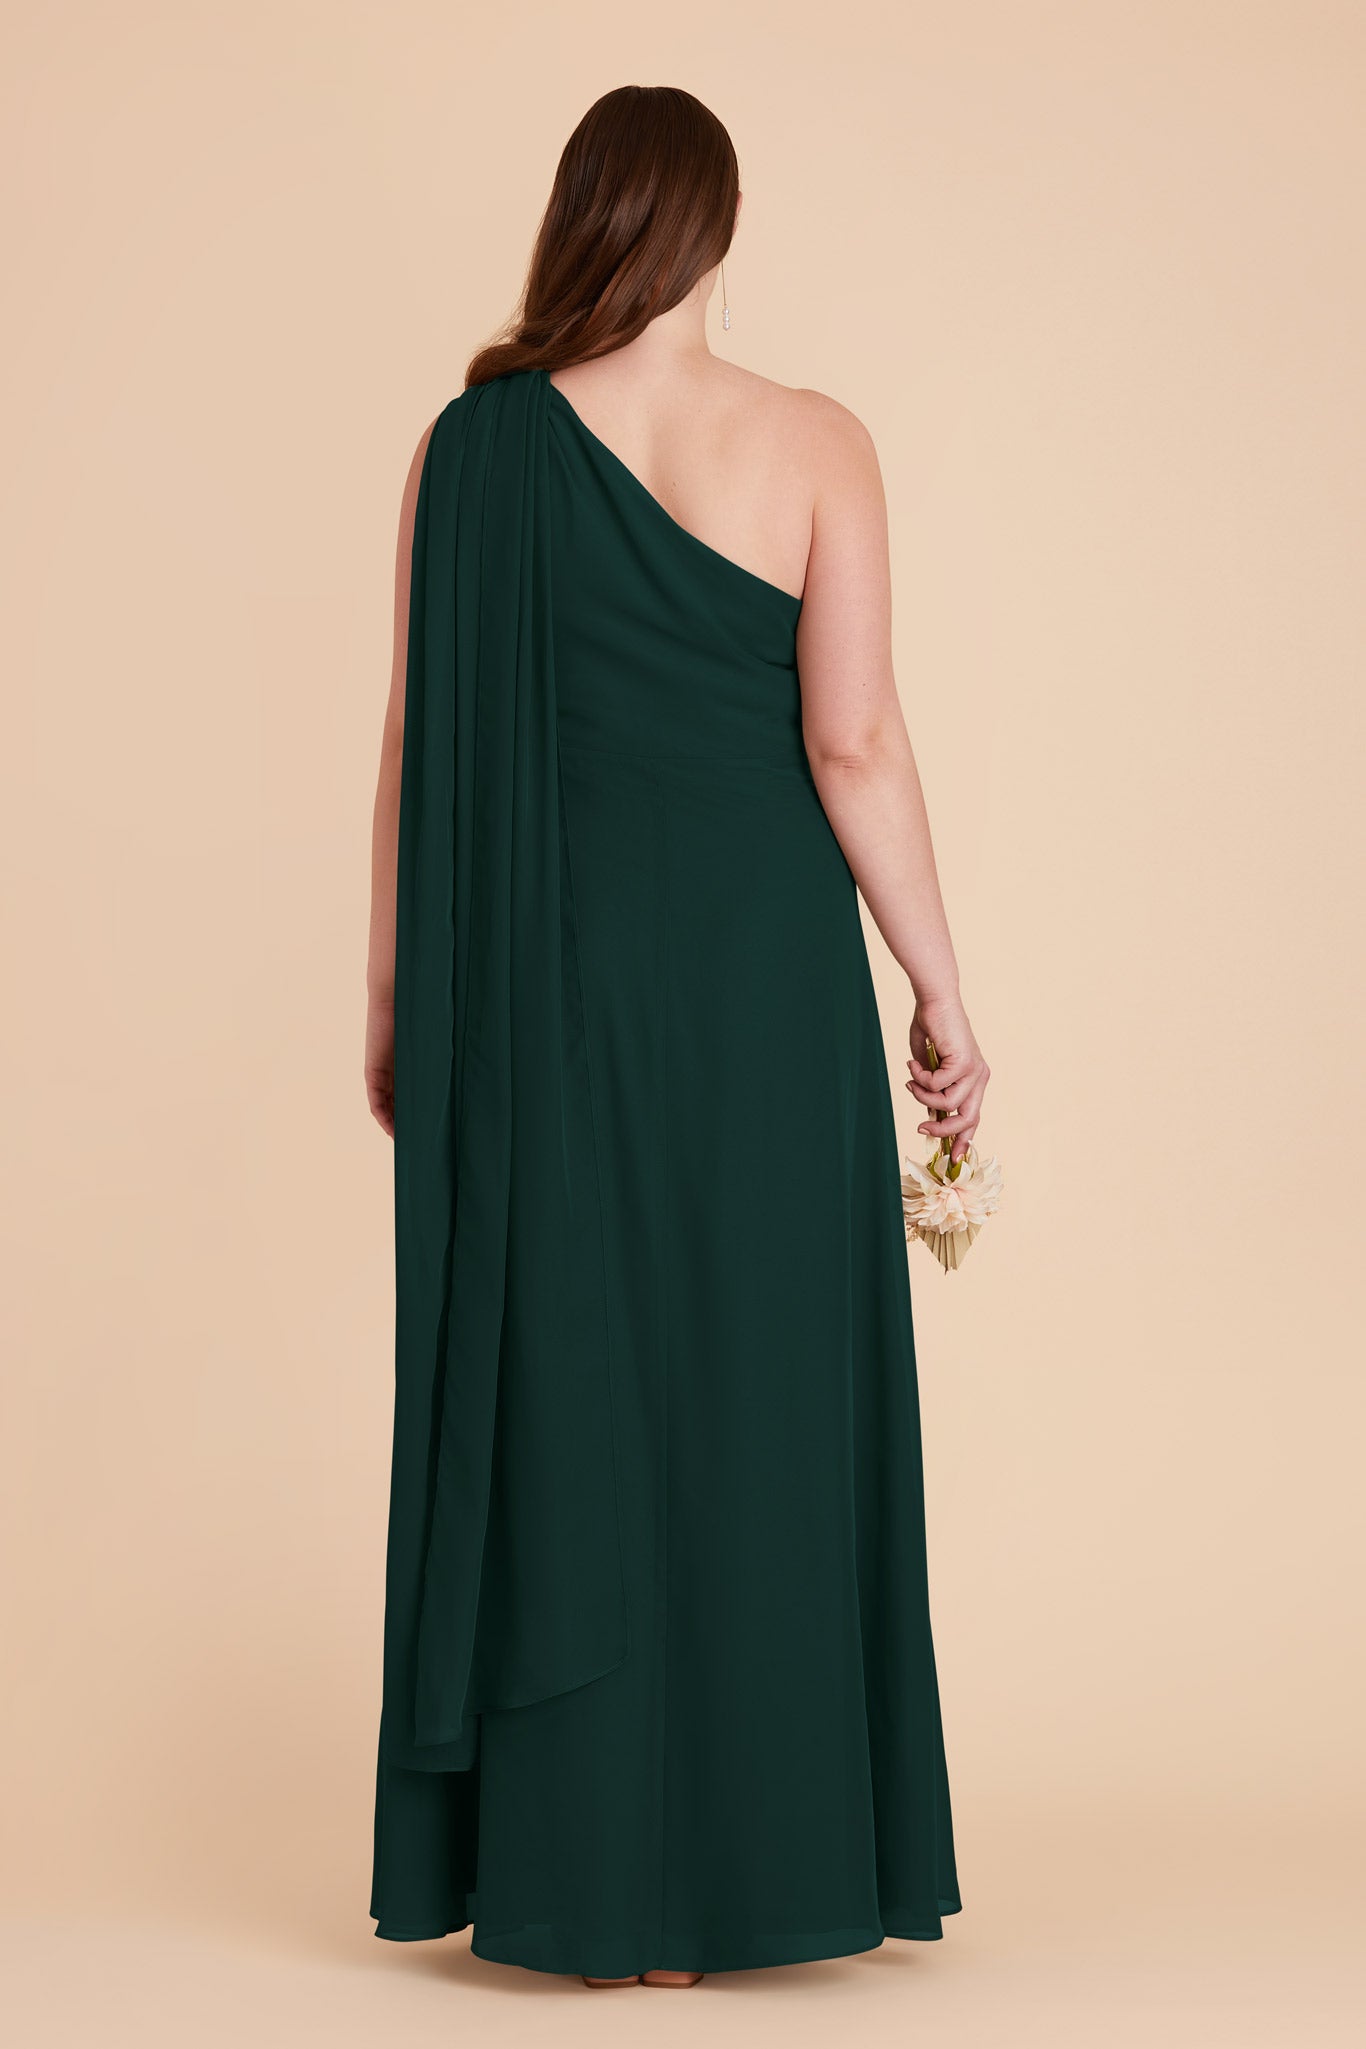 Emerald Melissa Chiffon Dress by Birdy Grey